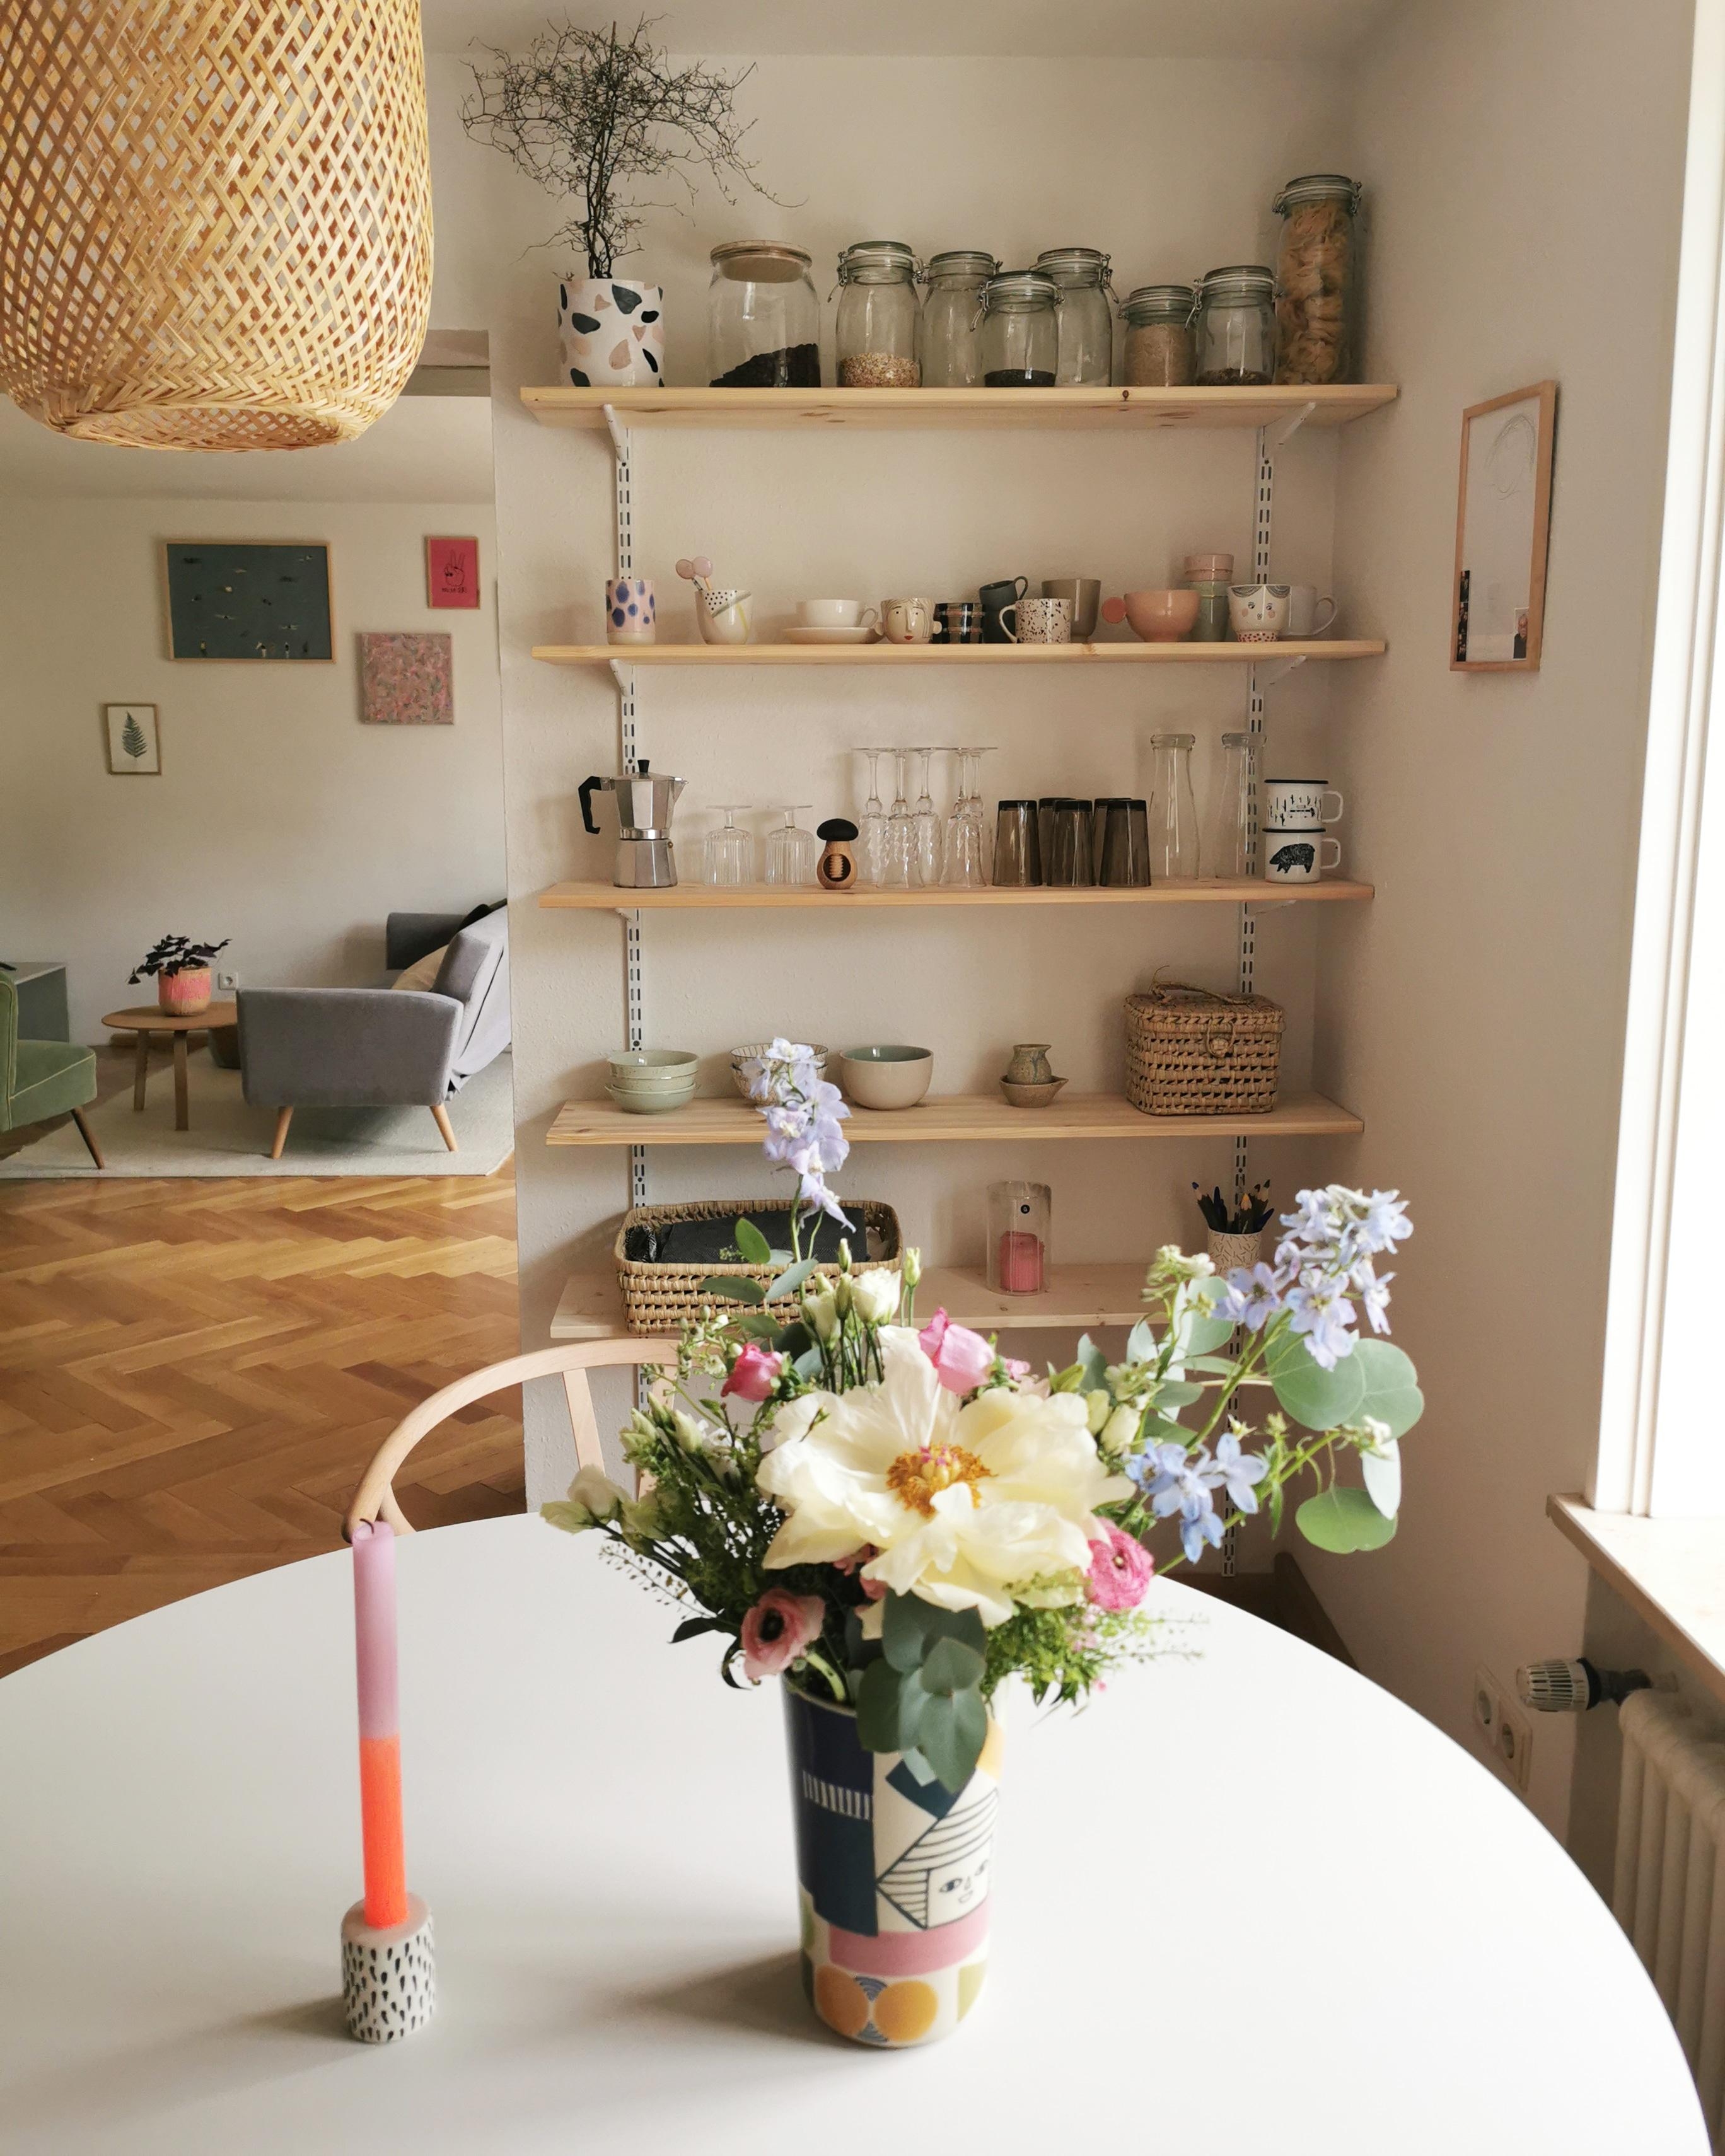 Das Regal mag ich sehr gerne. Simpel, praktisch und schön.
#kitchen #shelfie #flowers